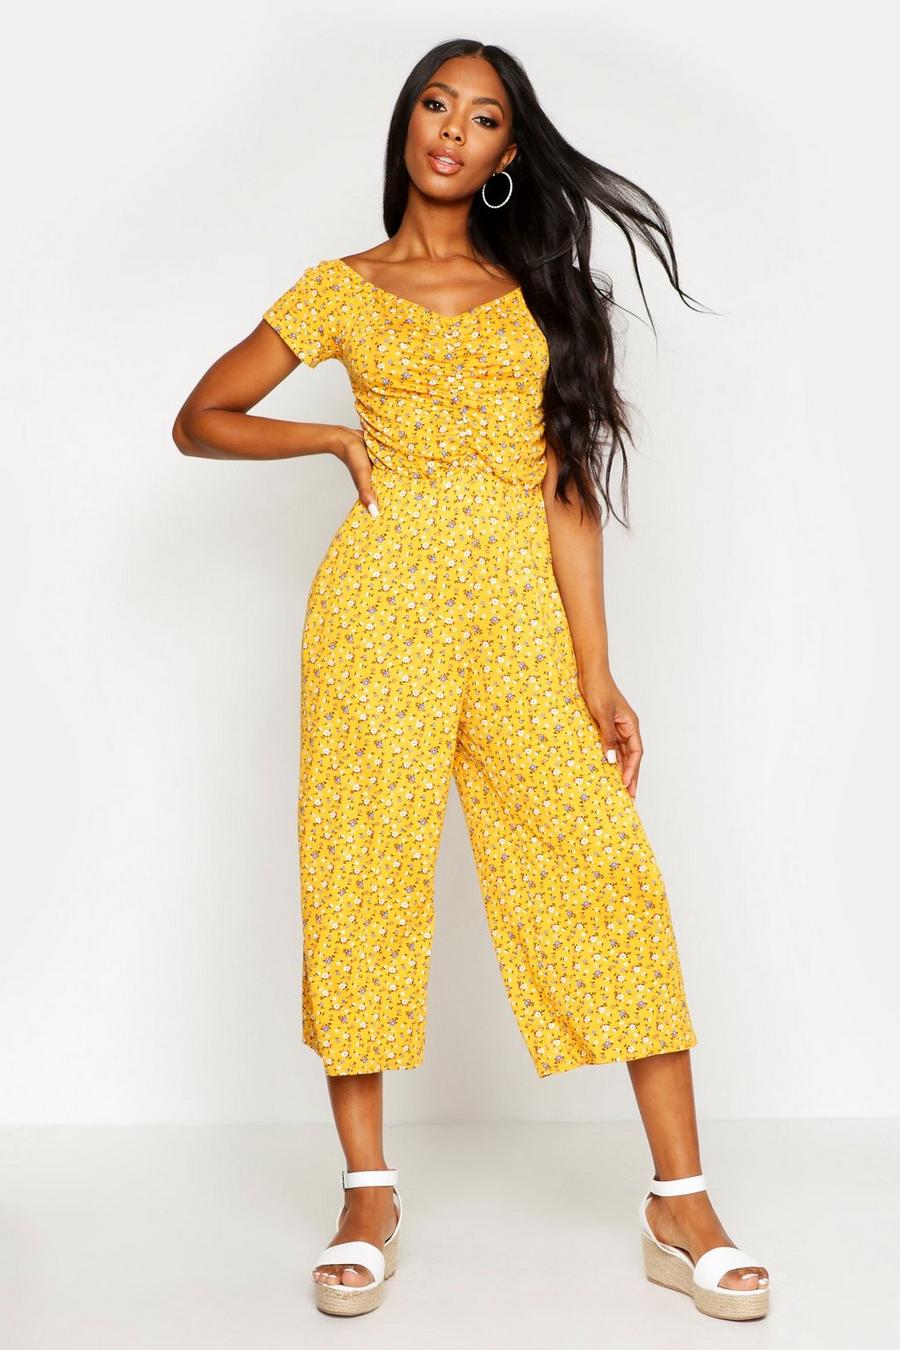 Culottes-Jumpsuit mit Herzausschnitt und Streublüten-Print, Mustard yellow